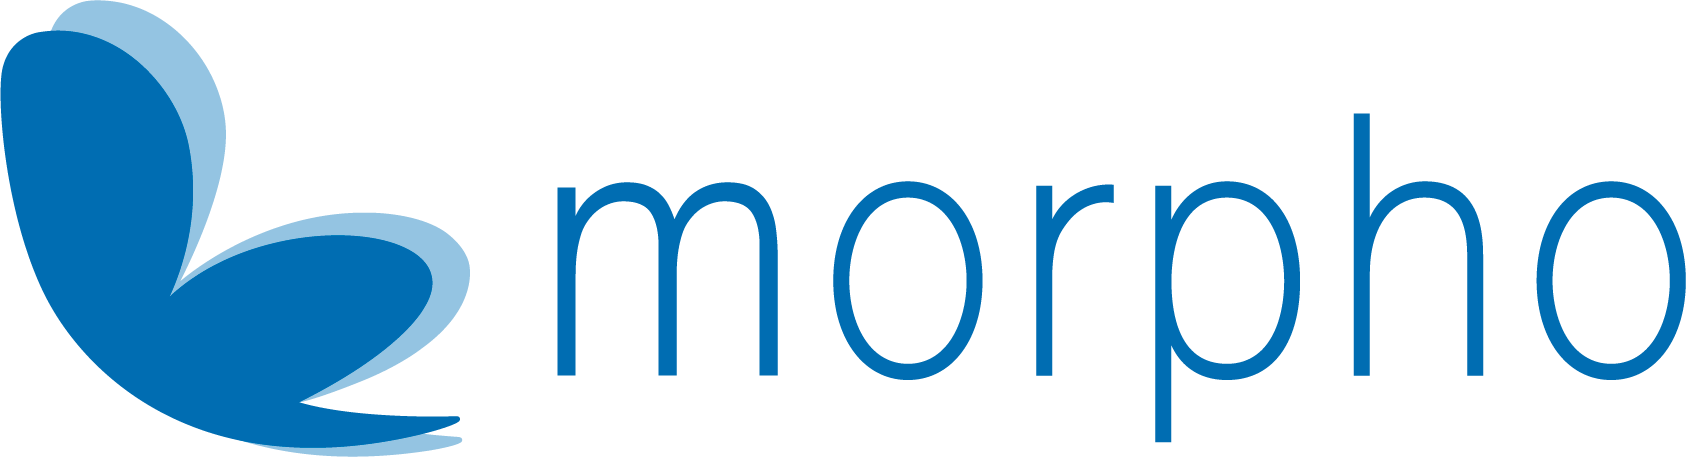 Morpho, Inc.